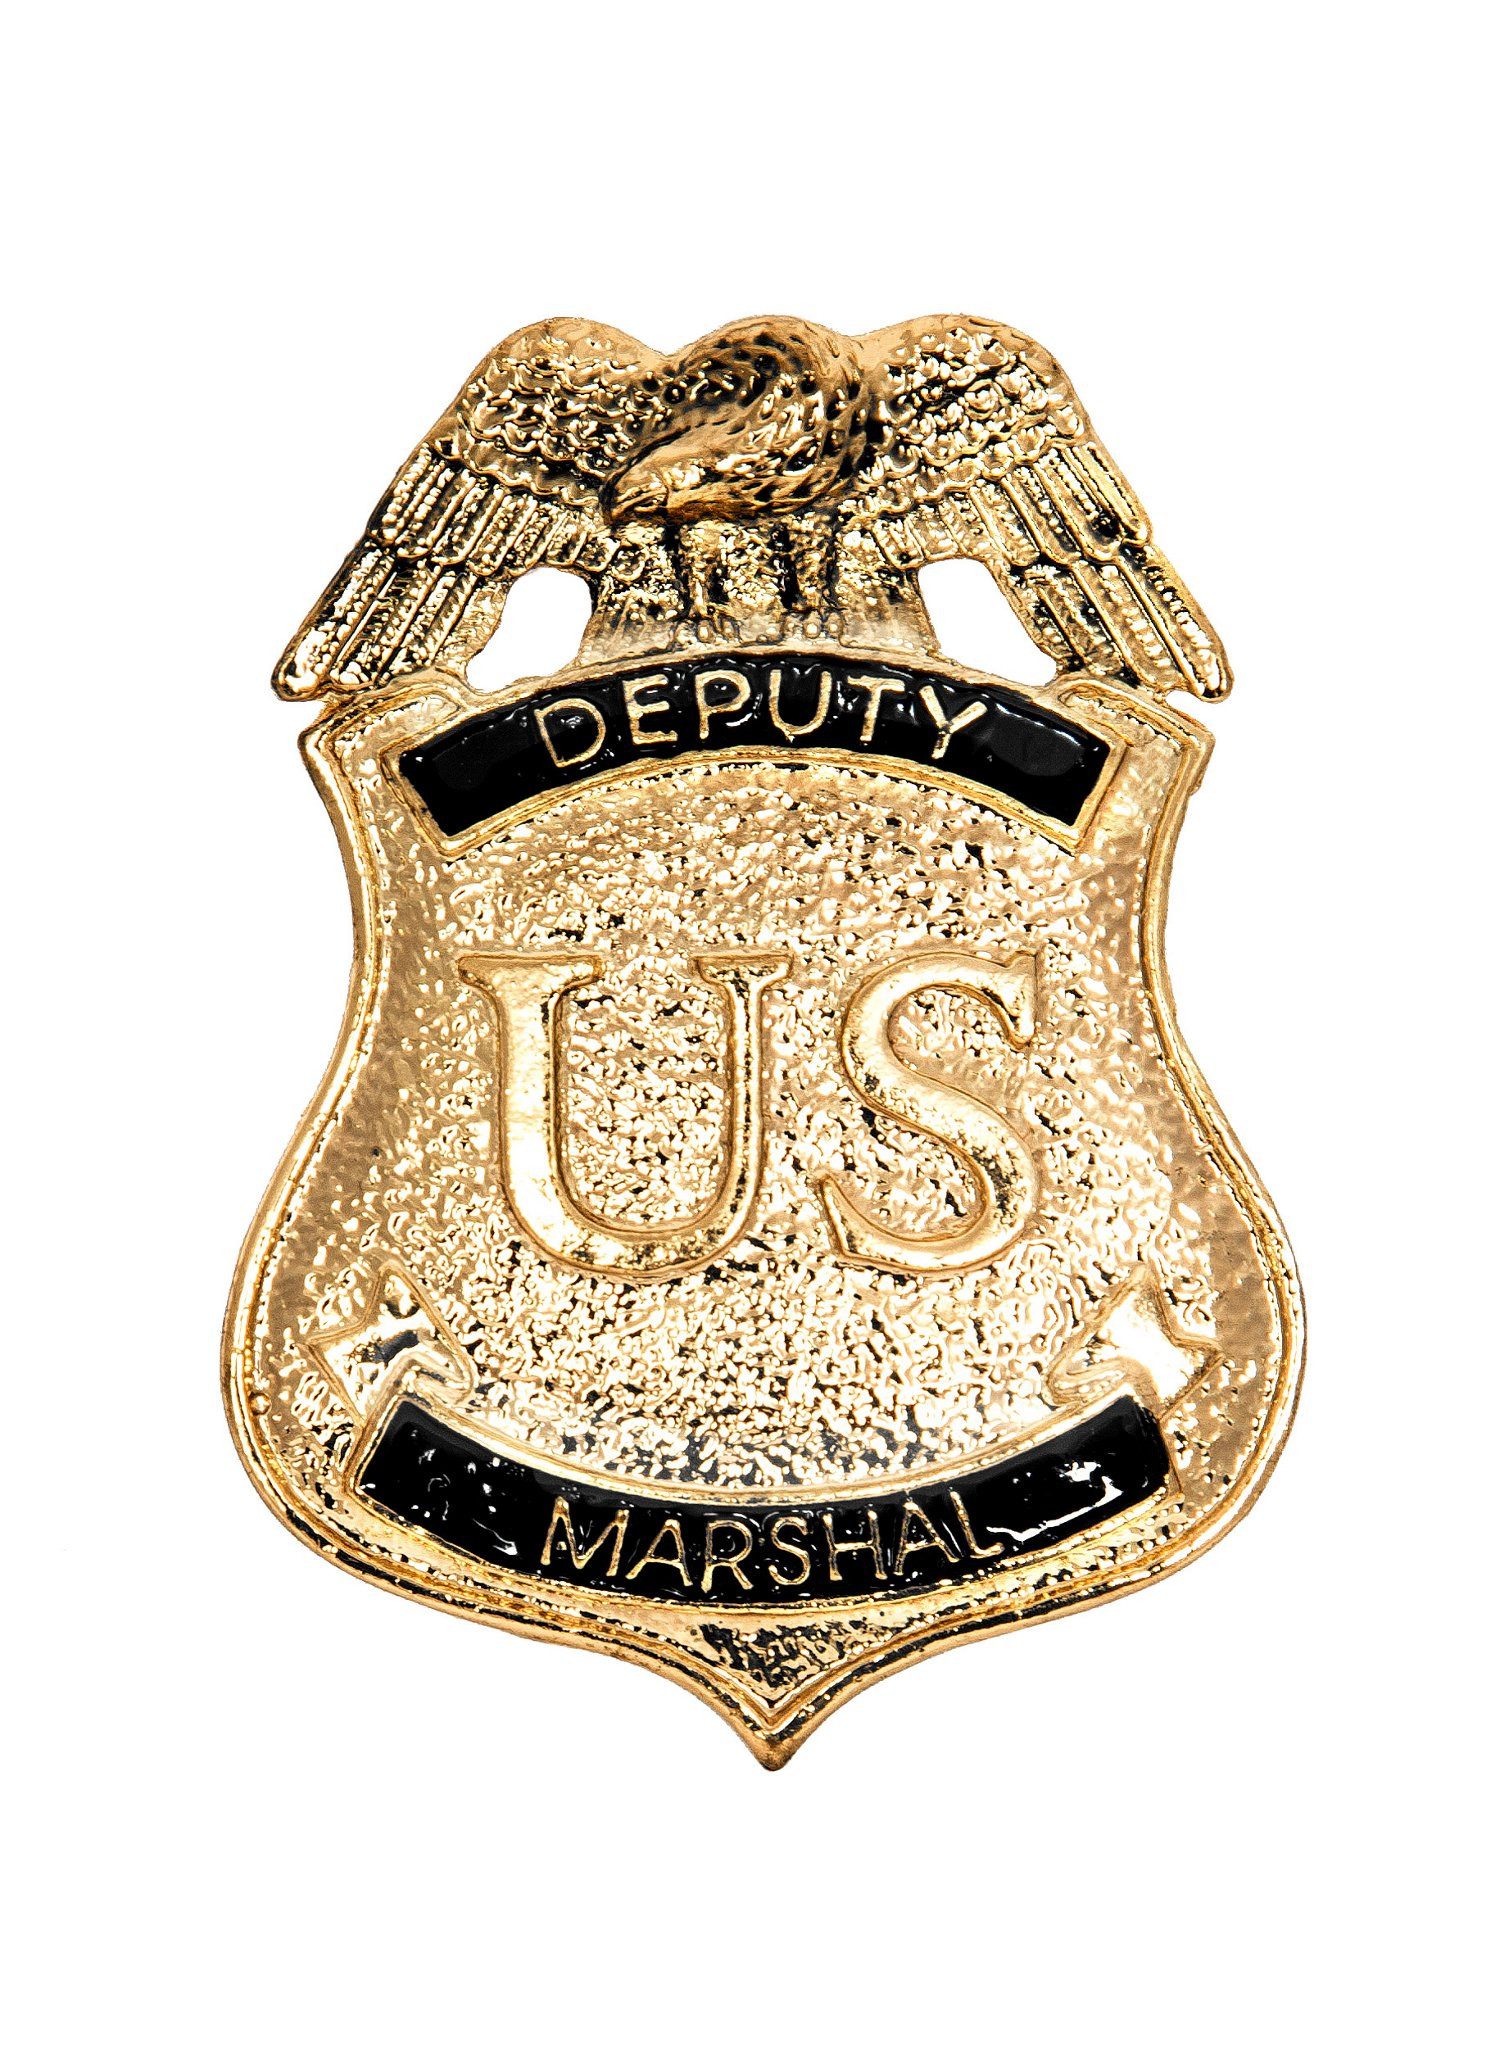 Metamorph Kostüm US Deputy Marshal Abzeichen, Originalgetreue Replik dieses klassischen Abzeichens